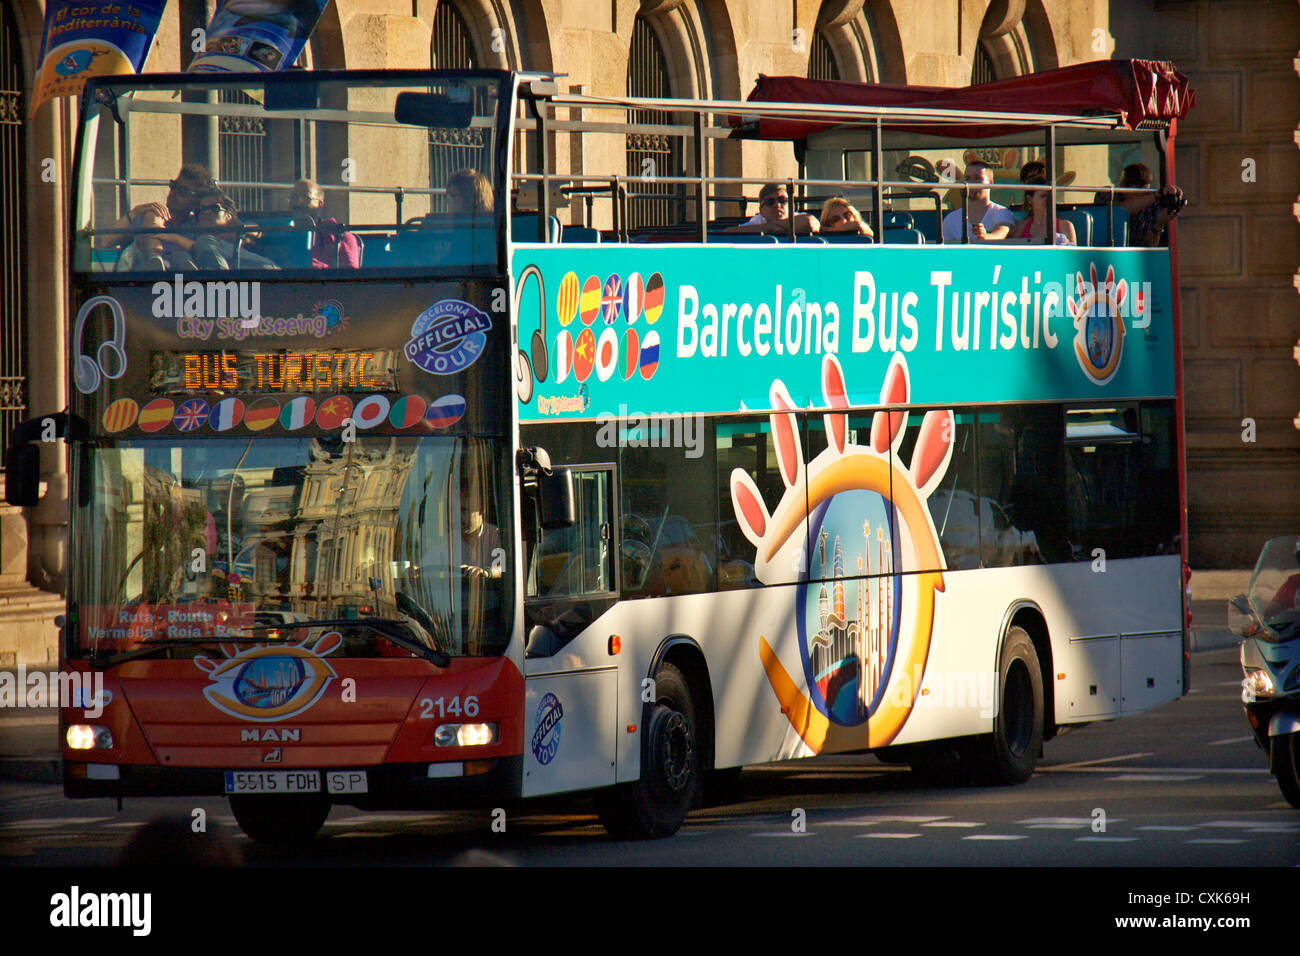 La ville de Barcelone vue voyant l'hop on hop off bus dans les rues de Barcelone, Espagne, Europe Banque D'Images